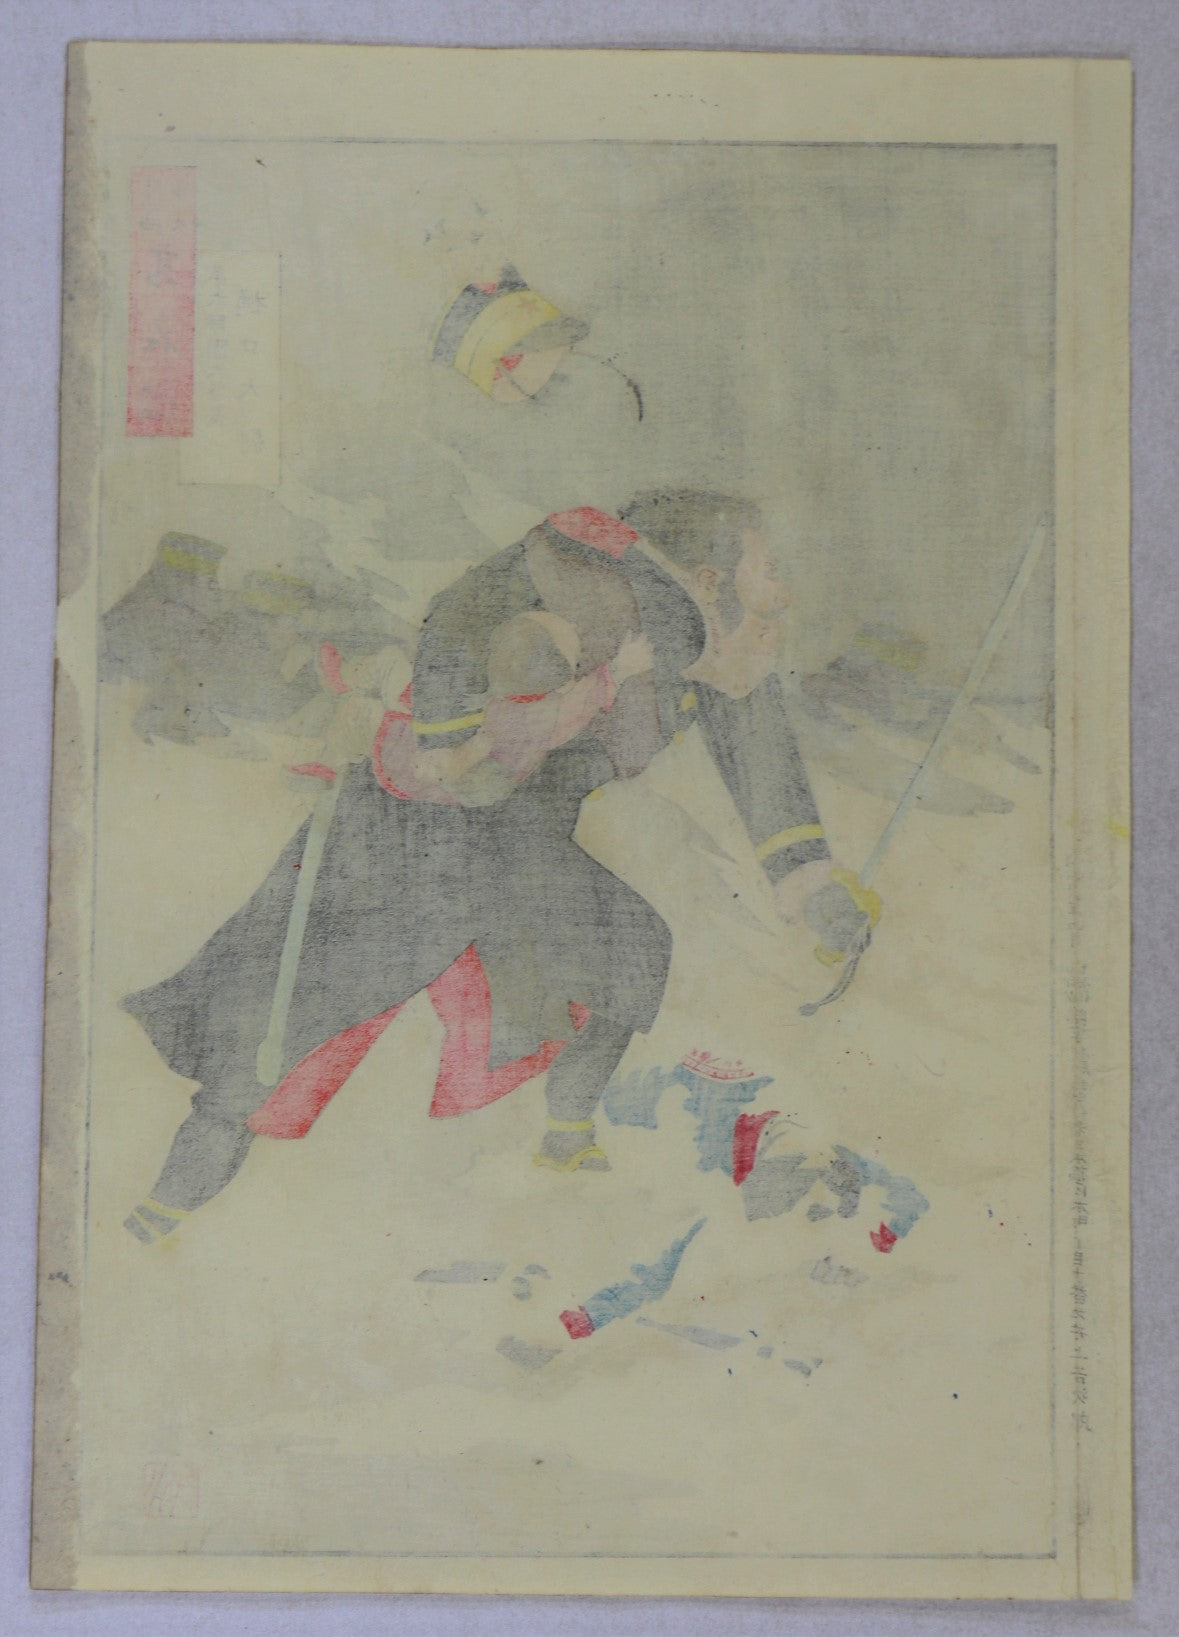 Captain Higuchi from the series "Mirror of Army and Navy Heroes "by Kiyochika / Le Capitaine Higuchi de la série "Miroir des Héros de l'Armée de Terre et de la Marine par Kiyochika (1895)